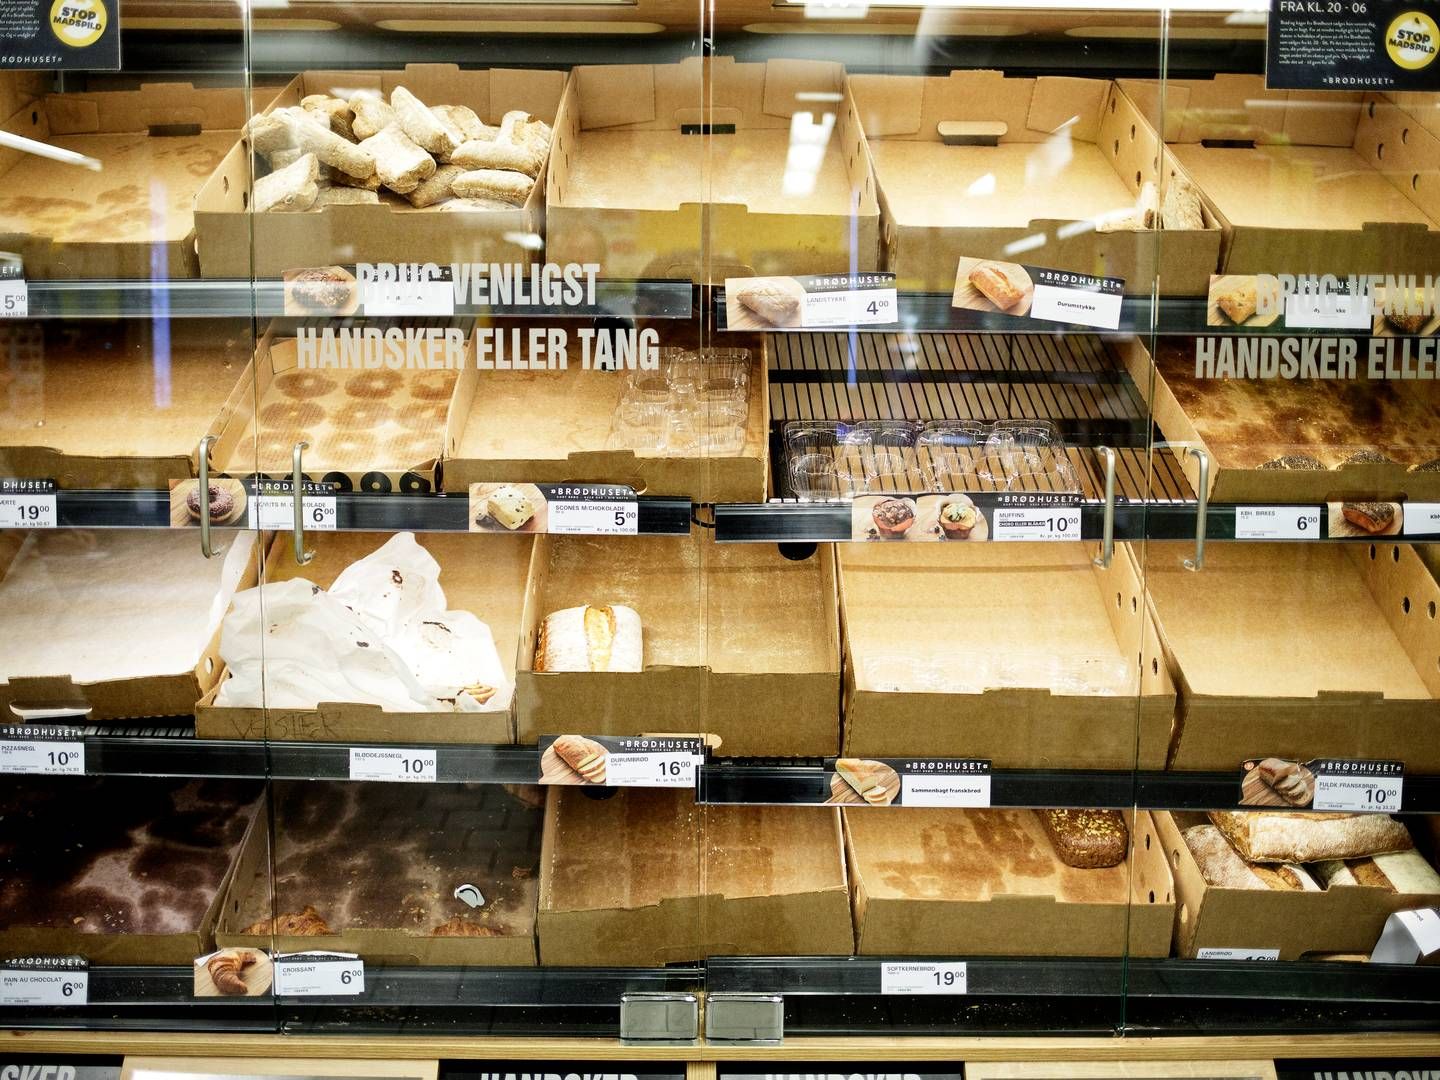 Fire britiske supermarkeder kritiseres for at vildlede forbrugeren i deres bageriafdeling. | Foto: Lasse Kofod